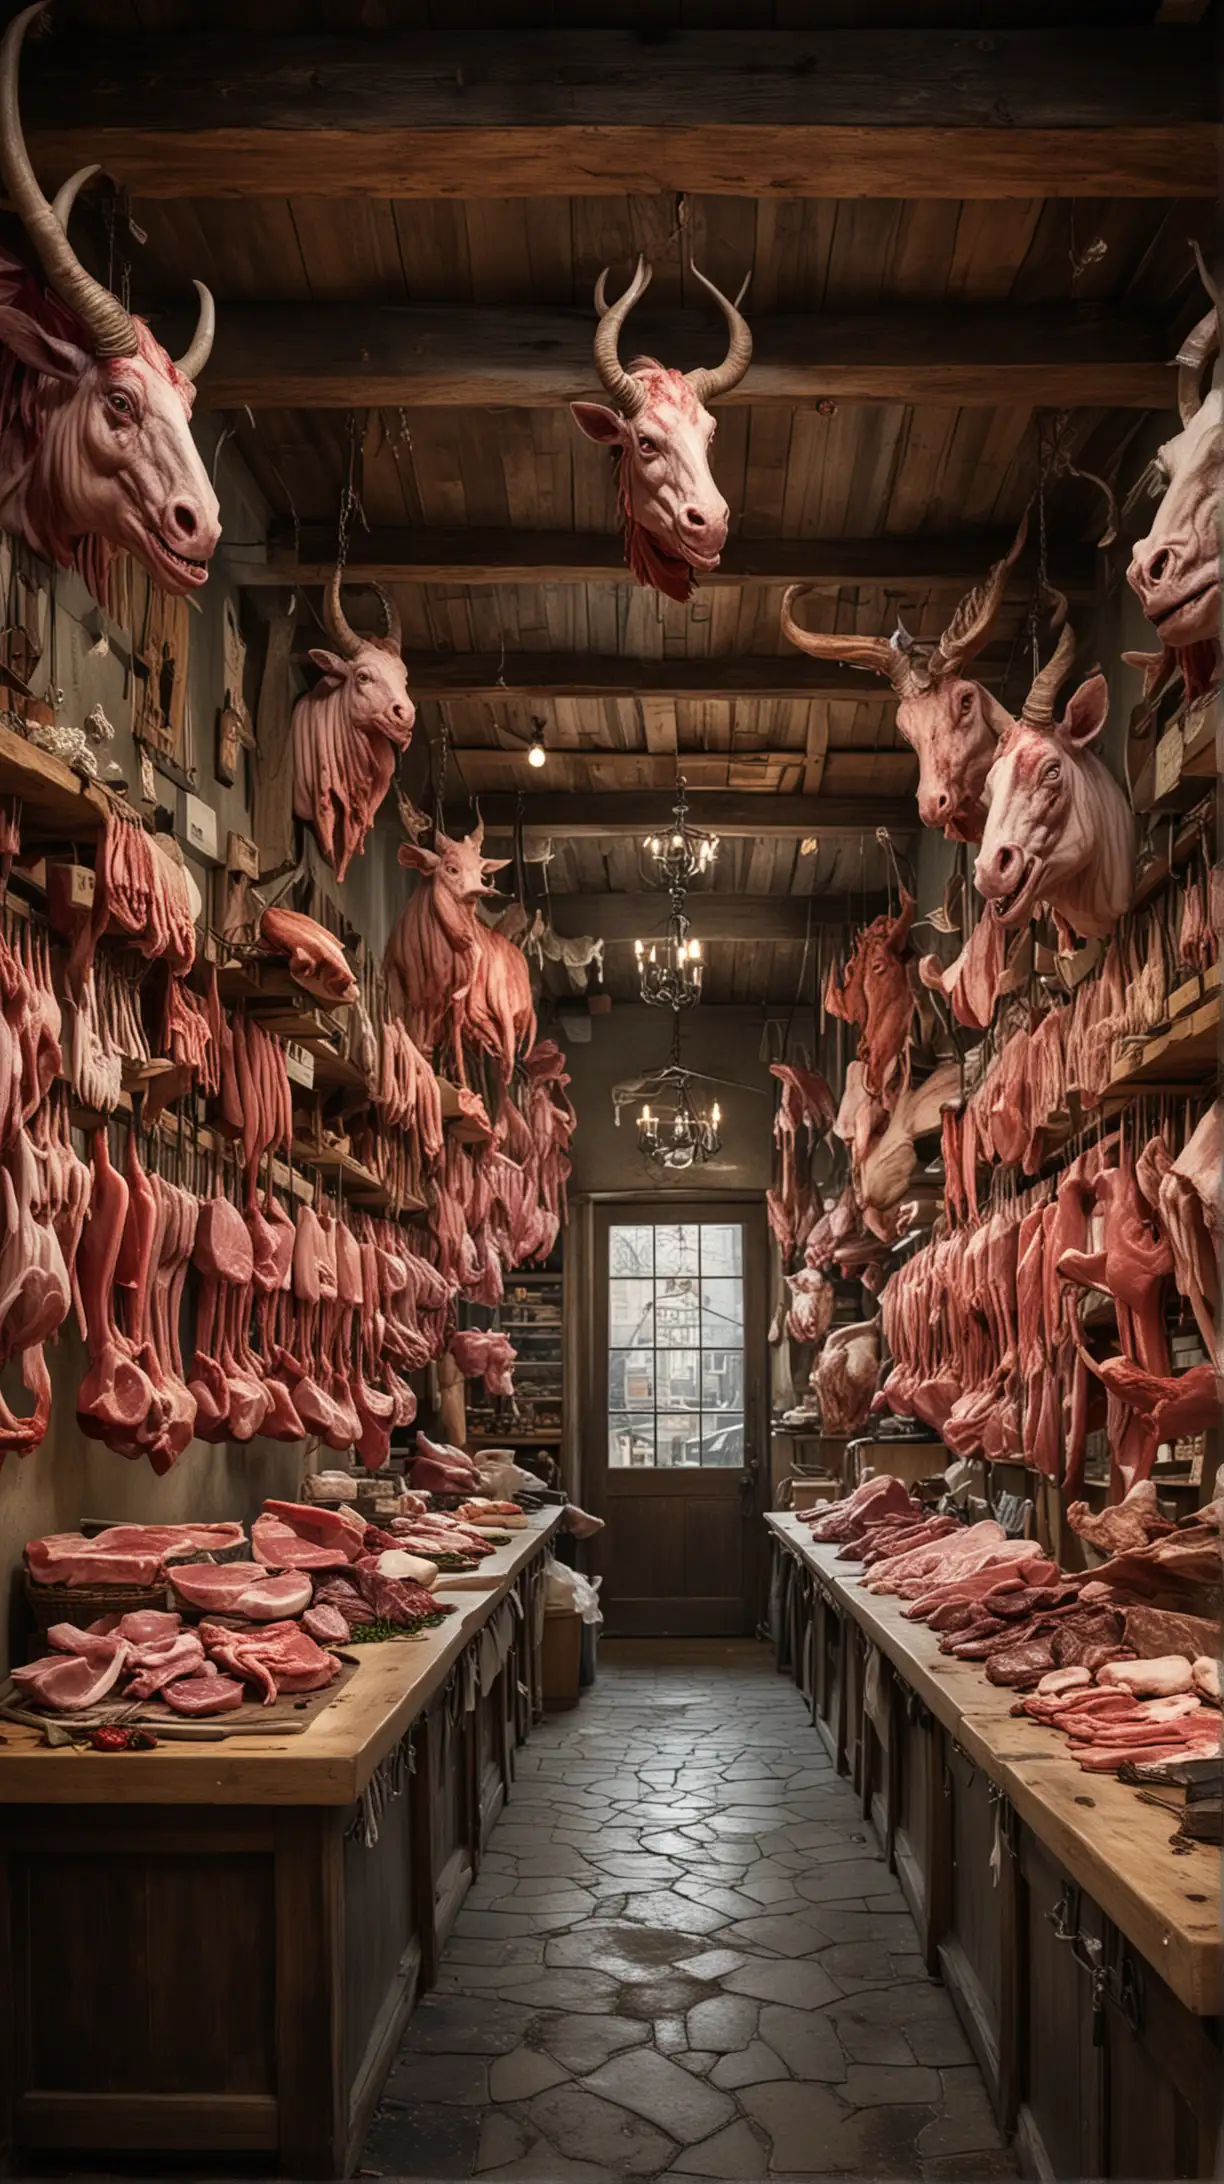 Mythical Creature Butcher Shop Fantastical Scene of Supernatural Meat Market